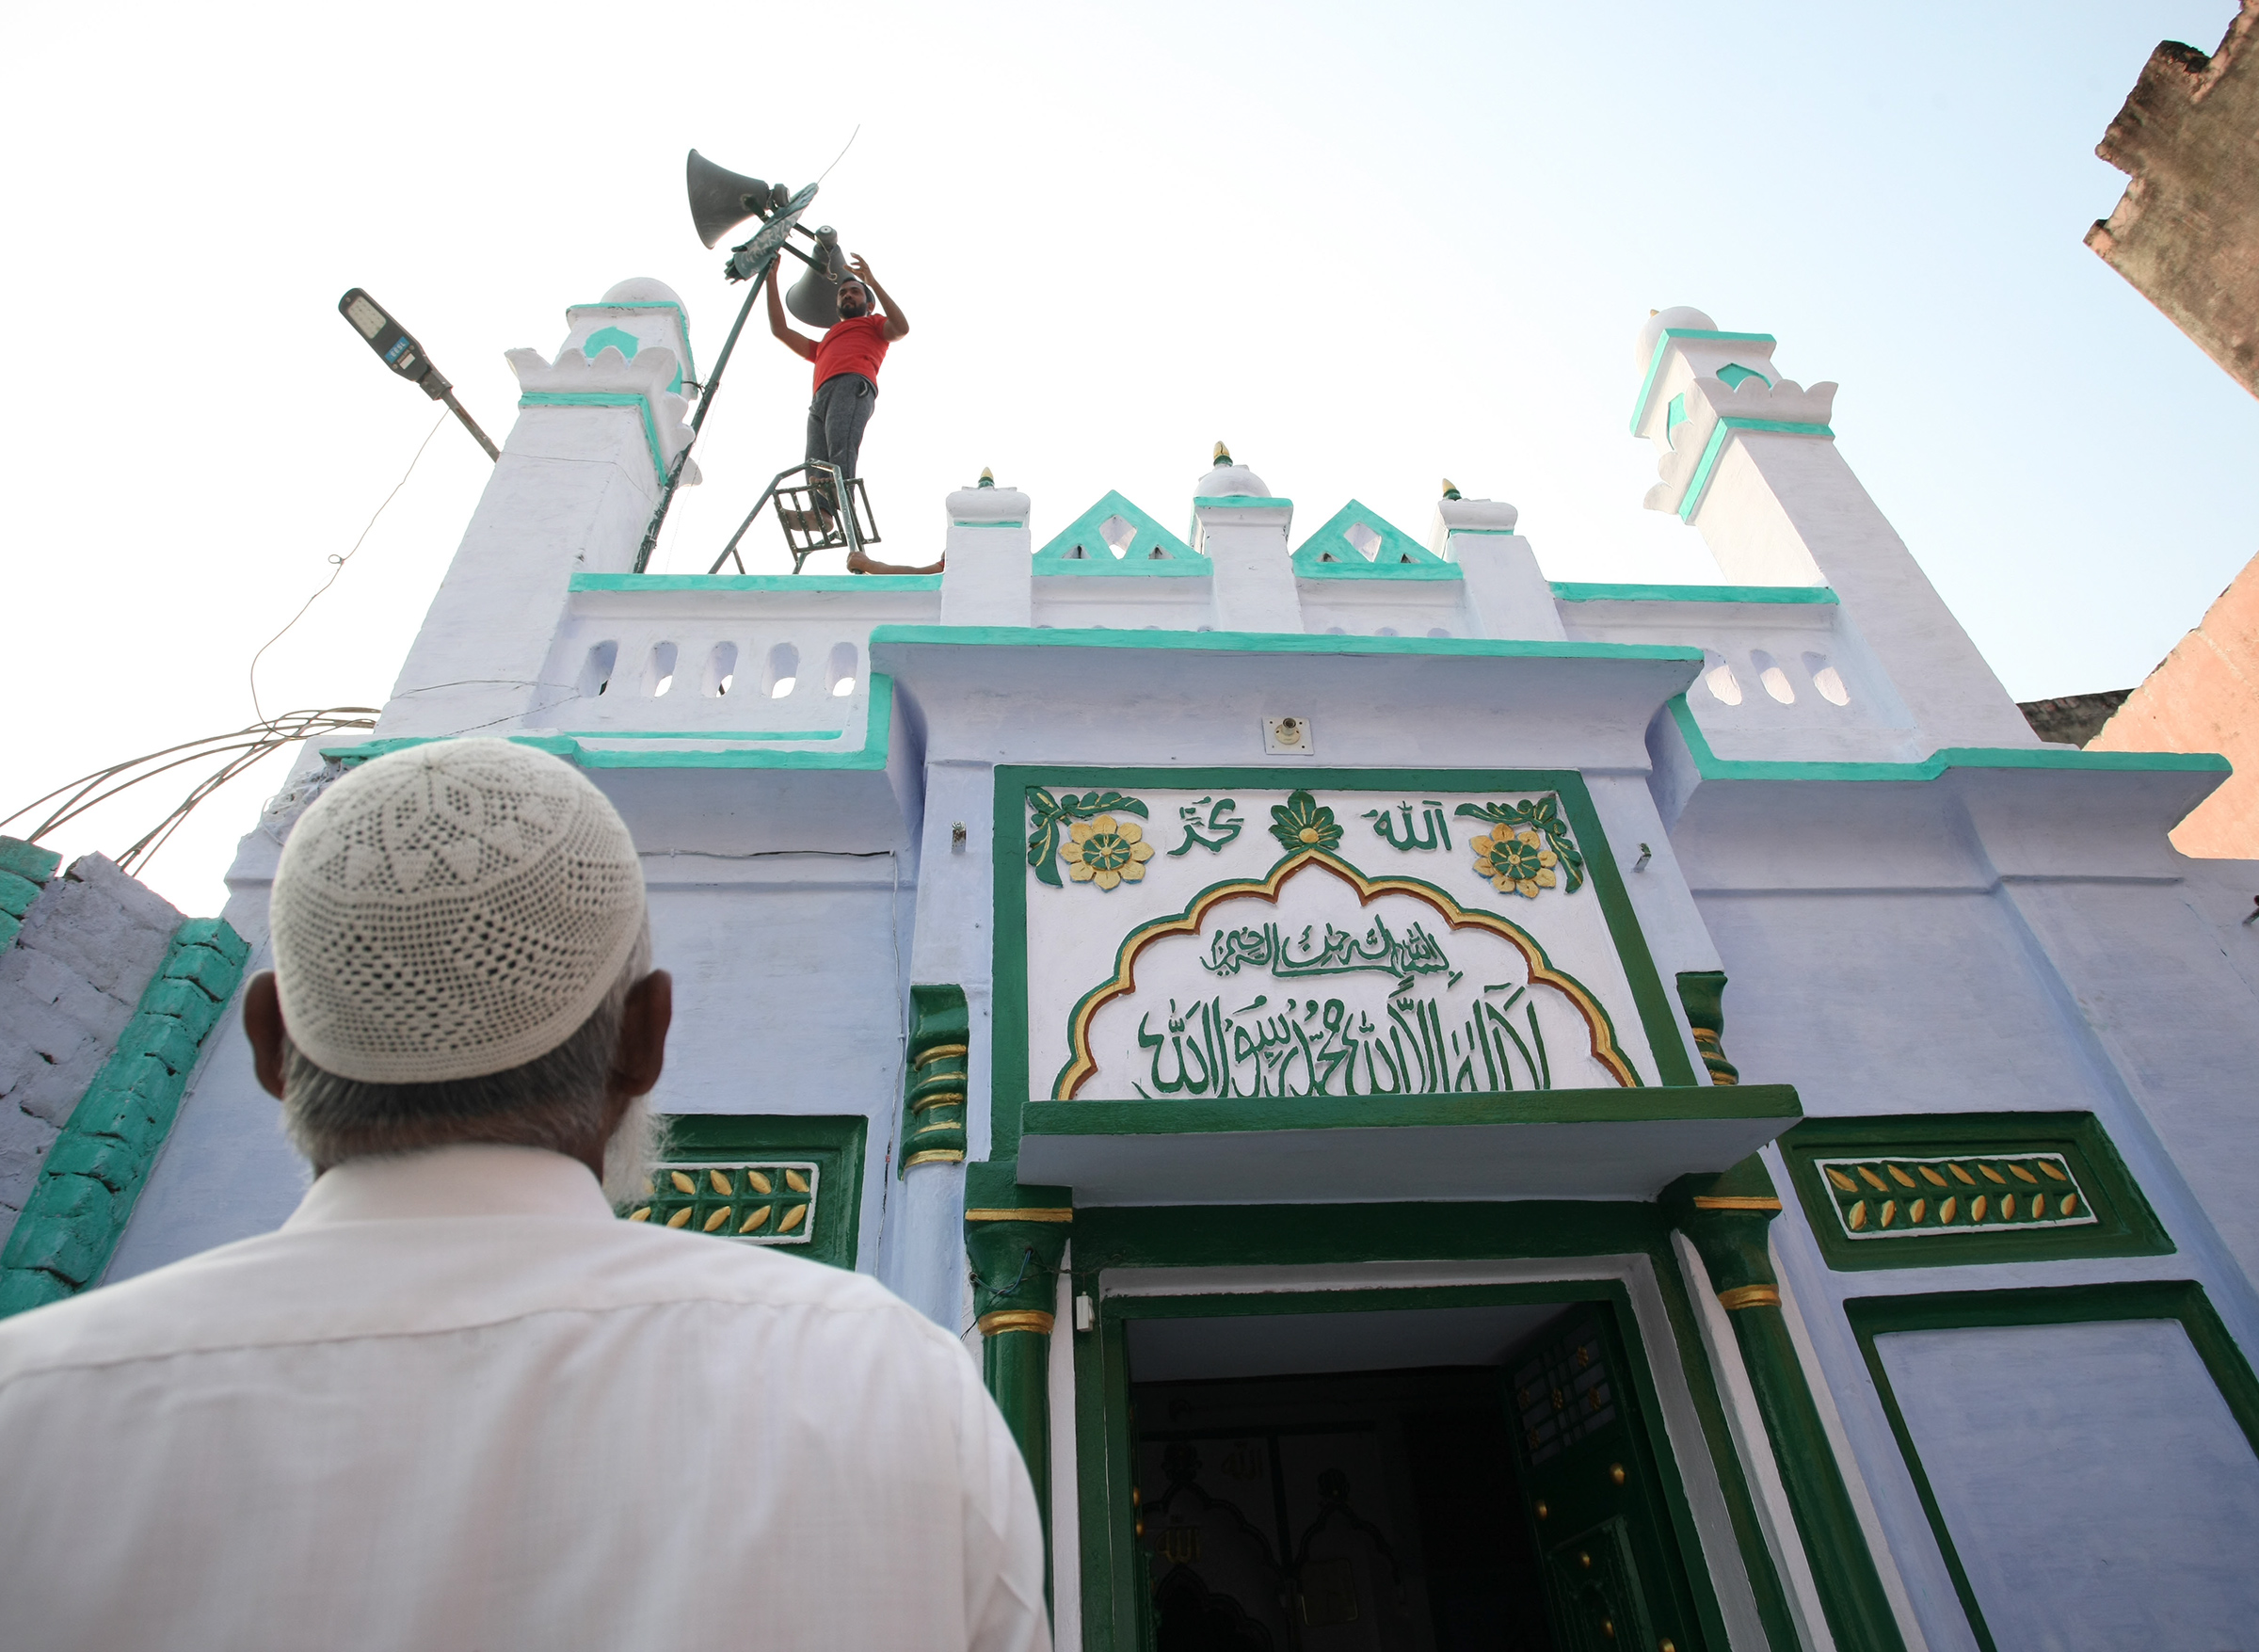 Một người đàn ông Hồi giáo Ấn Độ đứng bên ngoài một nhà thờ Hồi giáo ở Ayodhya, Ấn Độ, một ngày sau phán quyết của Tòa án tối cao về một địa điểm tôn giáo tranh chấp, vào ngày 10 tháng 11 năm 2019.